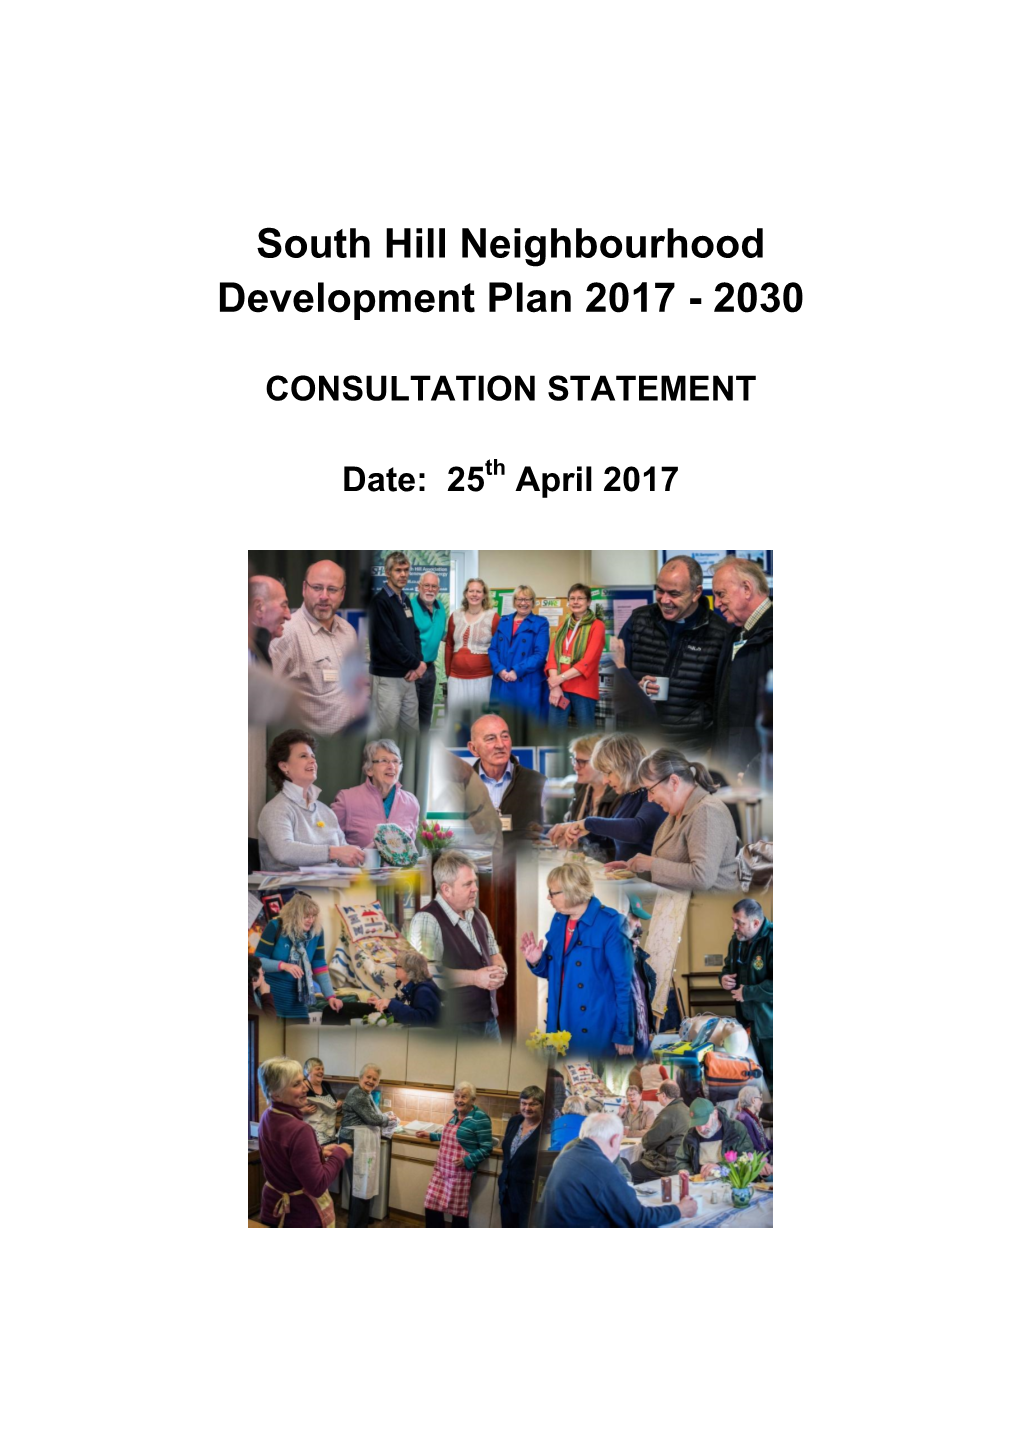 South Hill Neighbourhood Development Plan 2017 - 2030